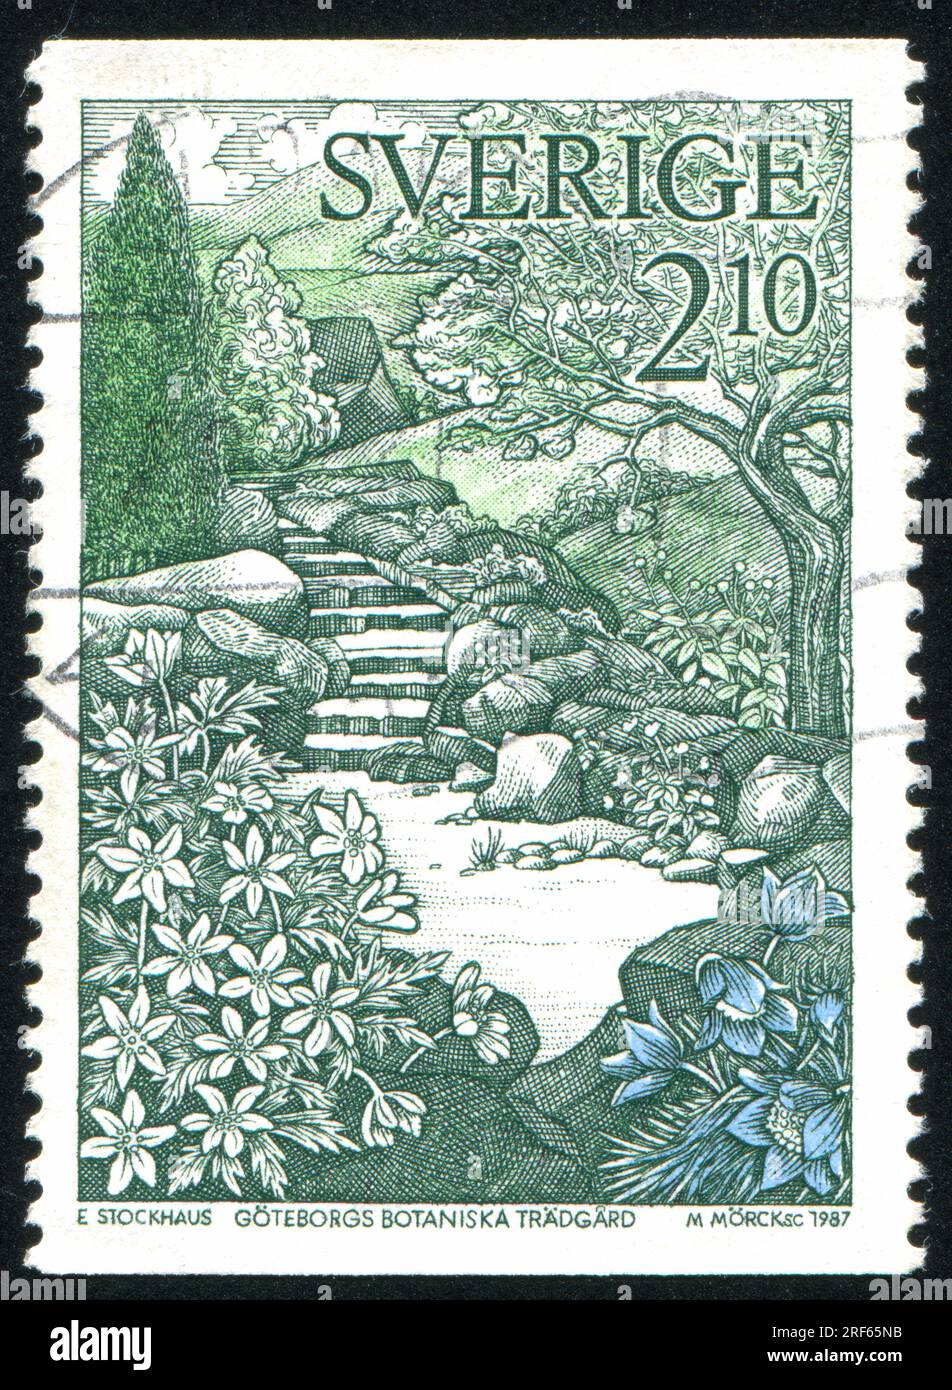 RUSSLAND KALININGRAD, 21. OKTOBER 2013: Briefmarke gedruckt von Schweden, zeigt weiße Anemonen und Felsgarten in den Gothenberger botanischen Gärten, ca. 1987 Stockfoto